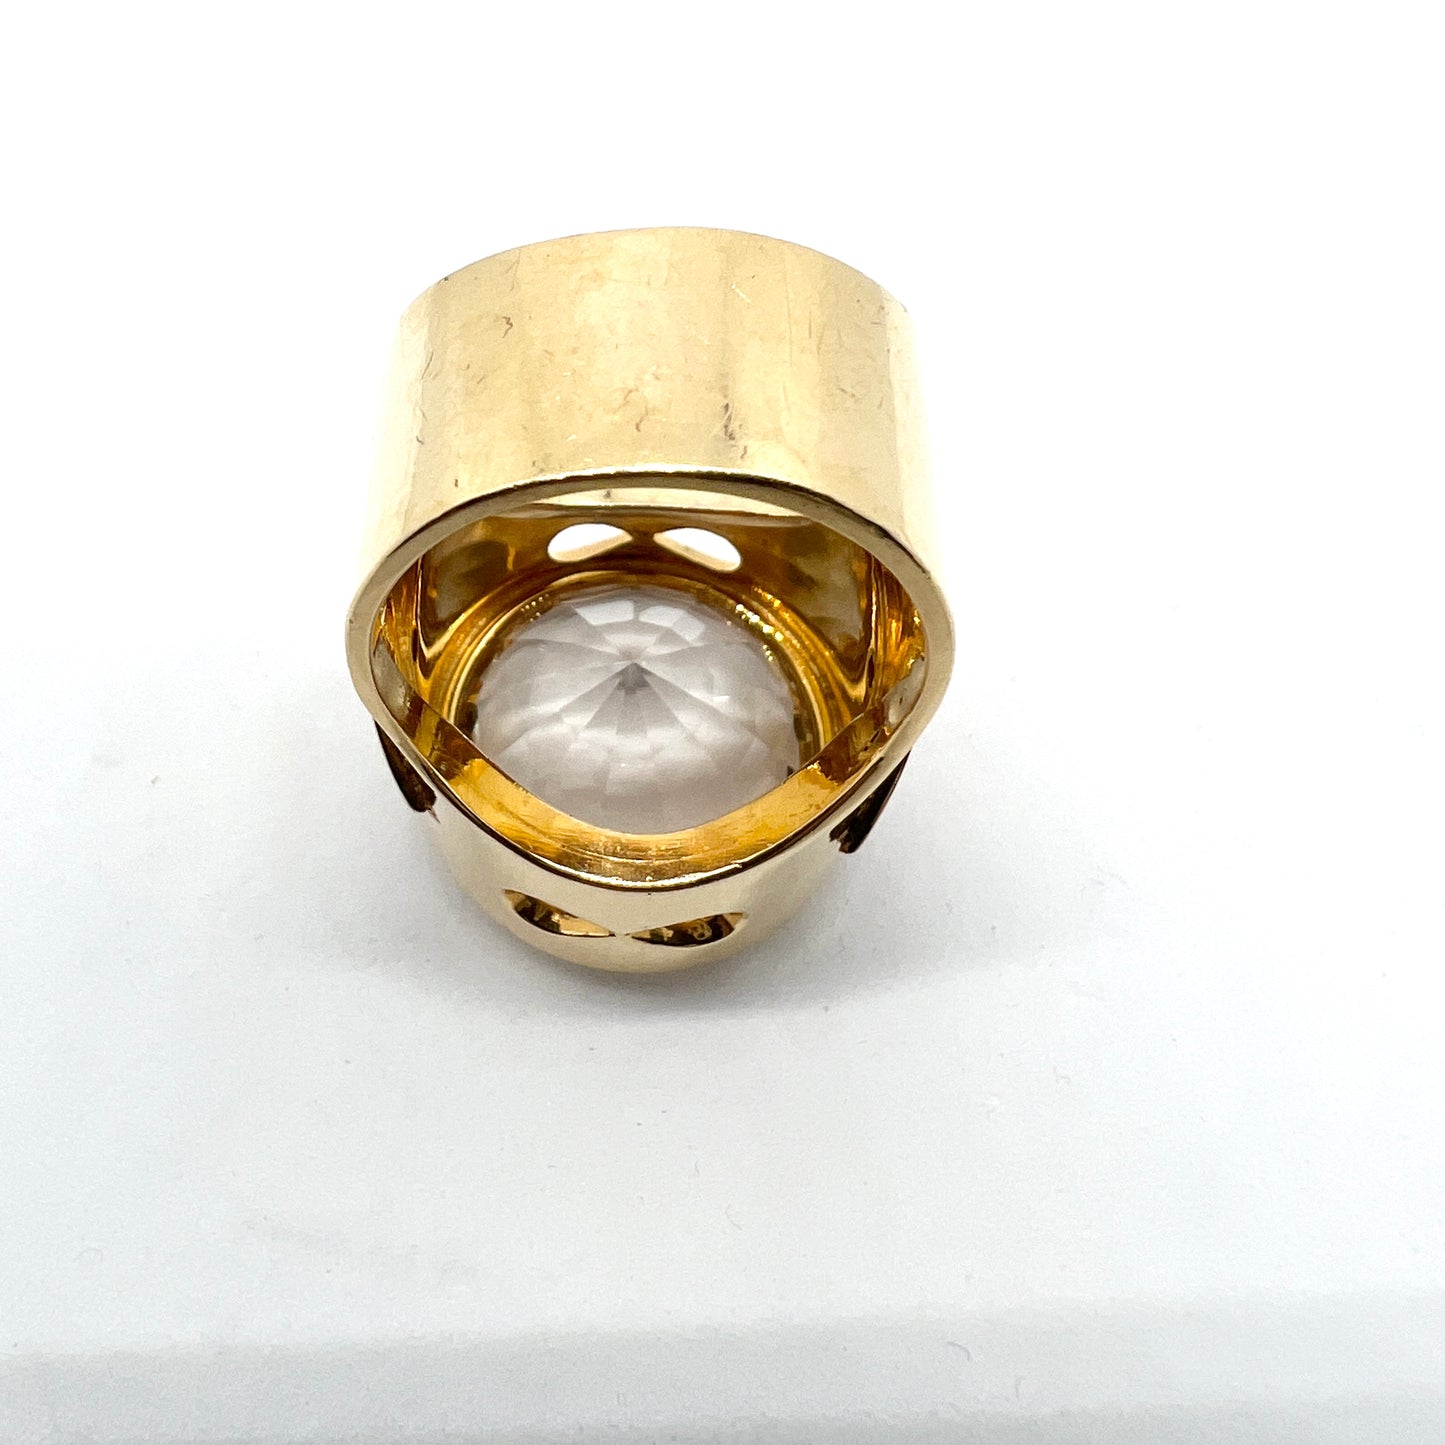 Stockholm 1971. Massive 37 gram Vintage Space Age 18k Gold Diamond Rock Crystal Ring.